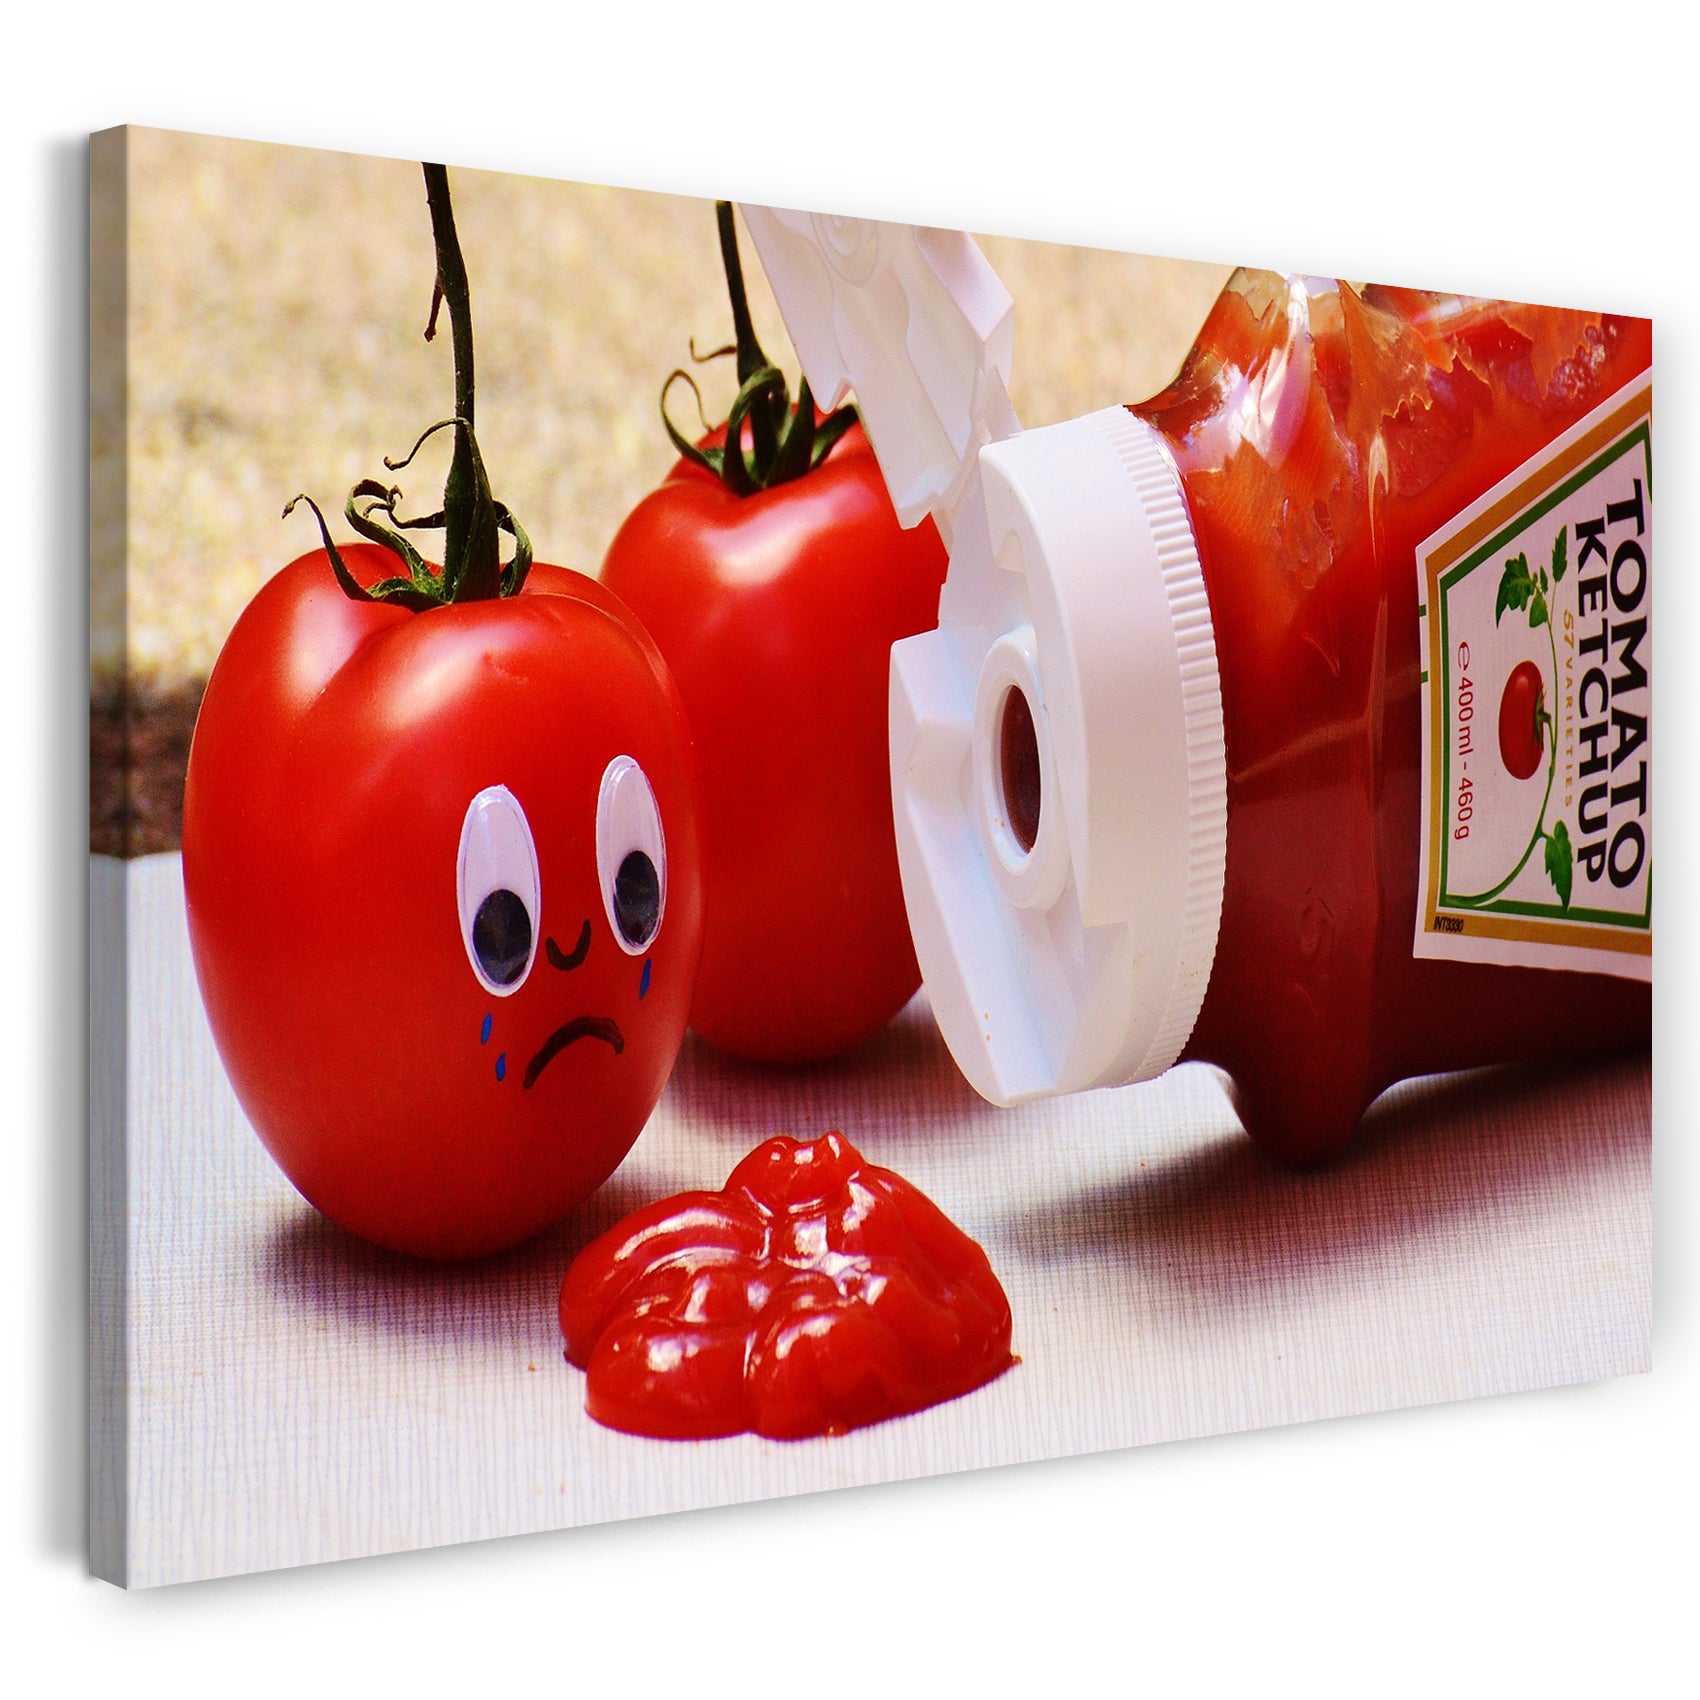 Leinwandbild Tomate erstarrt vor zermatschtem Freund aus Ketchup-Flasche